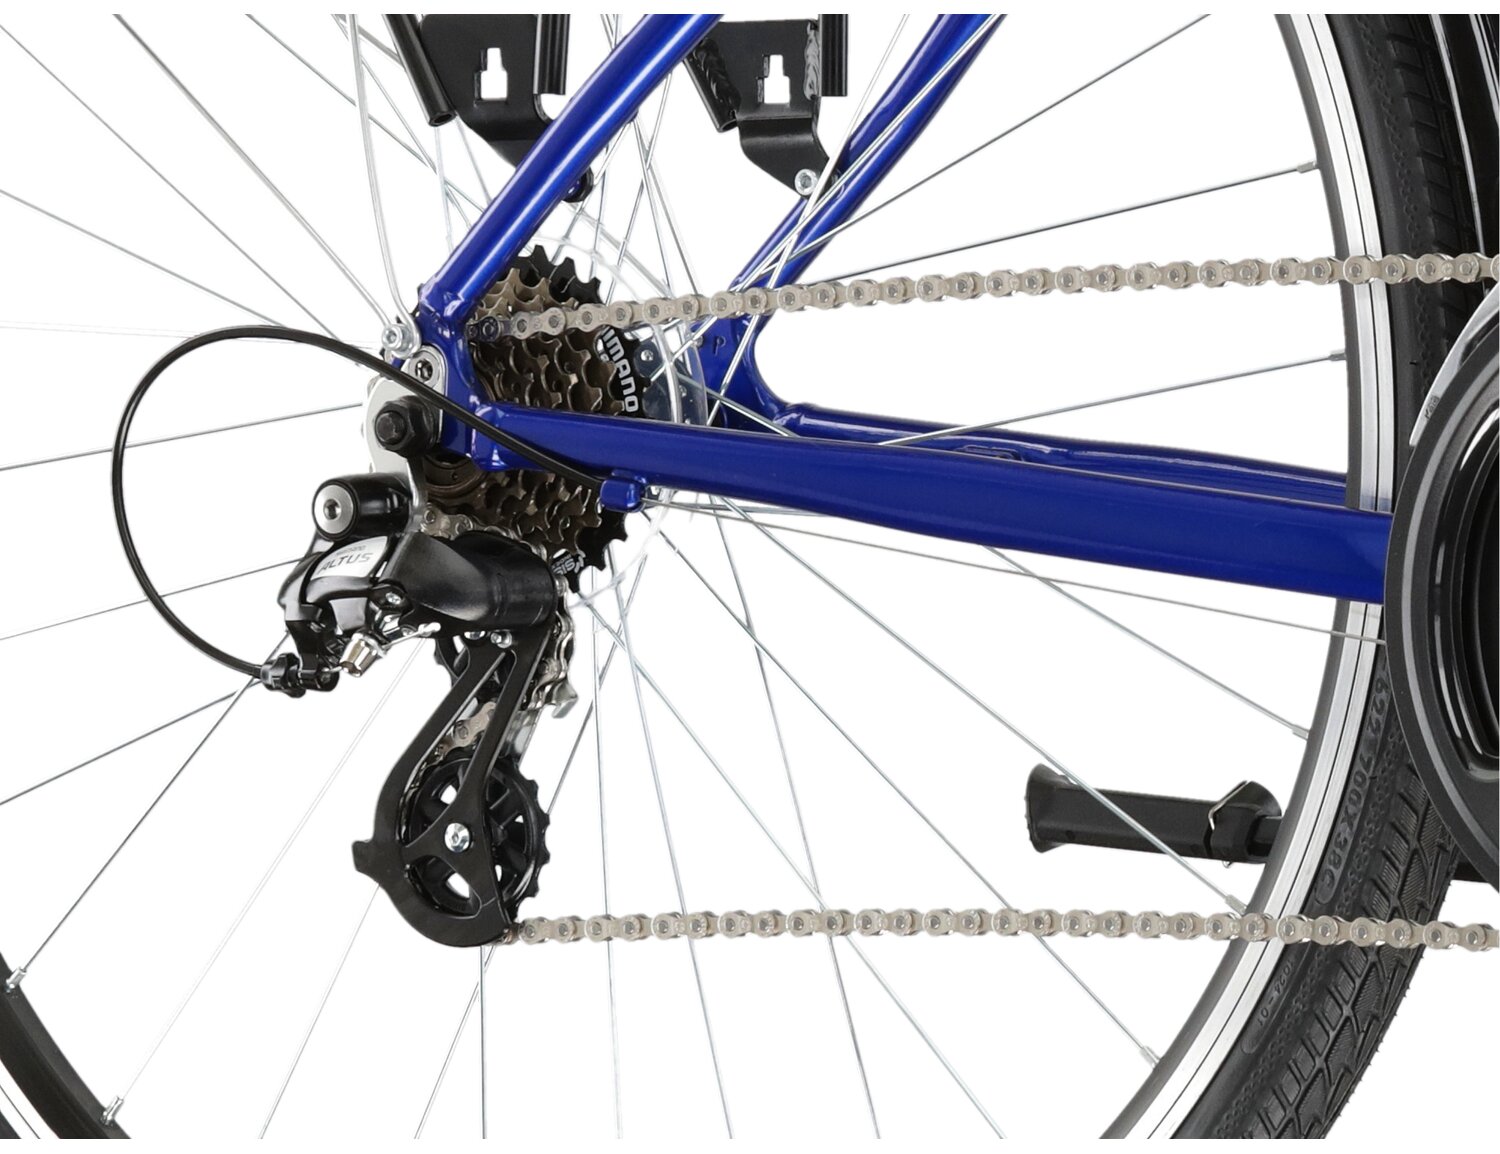  Tylna siedmiobiegowa przerzutka Shimano Altus M310 oraz hamulce v-brake w rowerze miejskim KROSS Sentio 2.0 